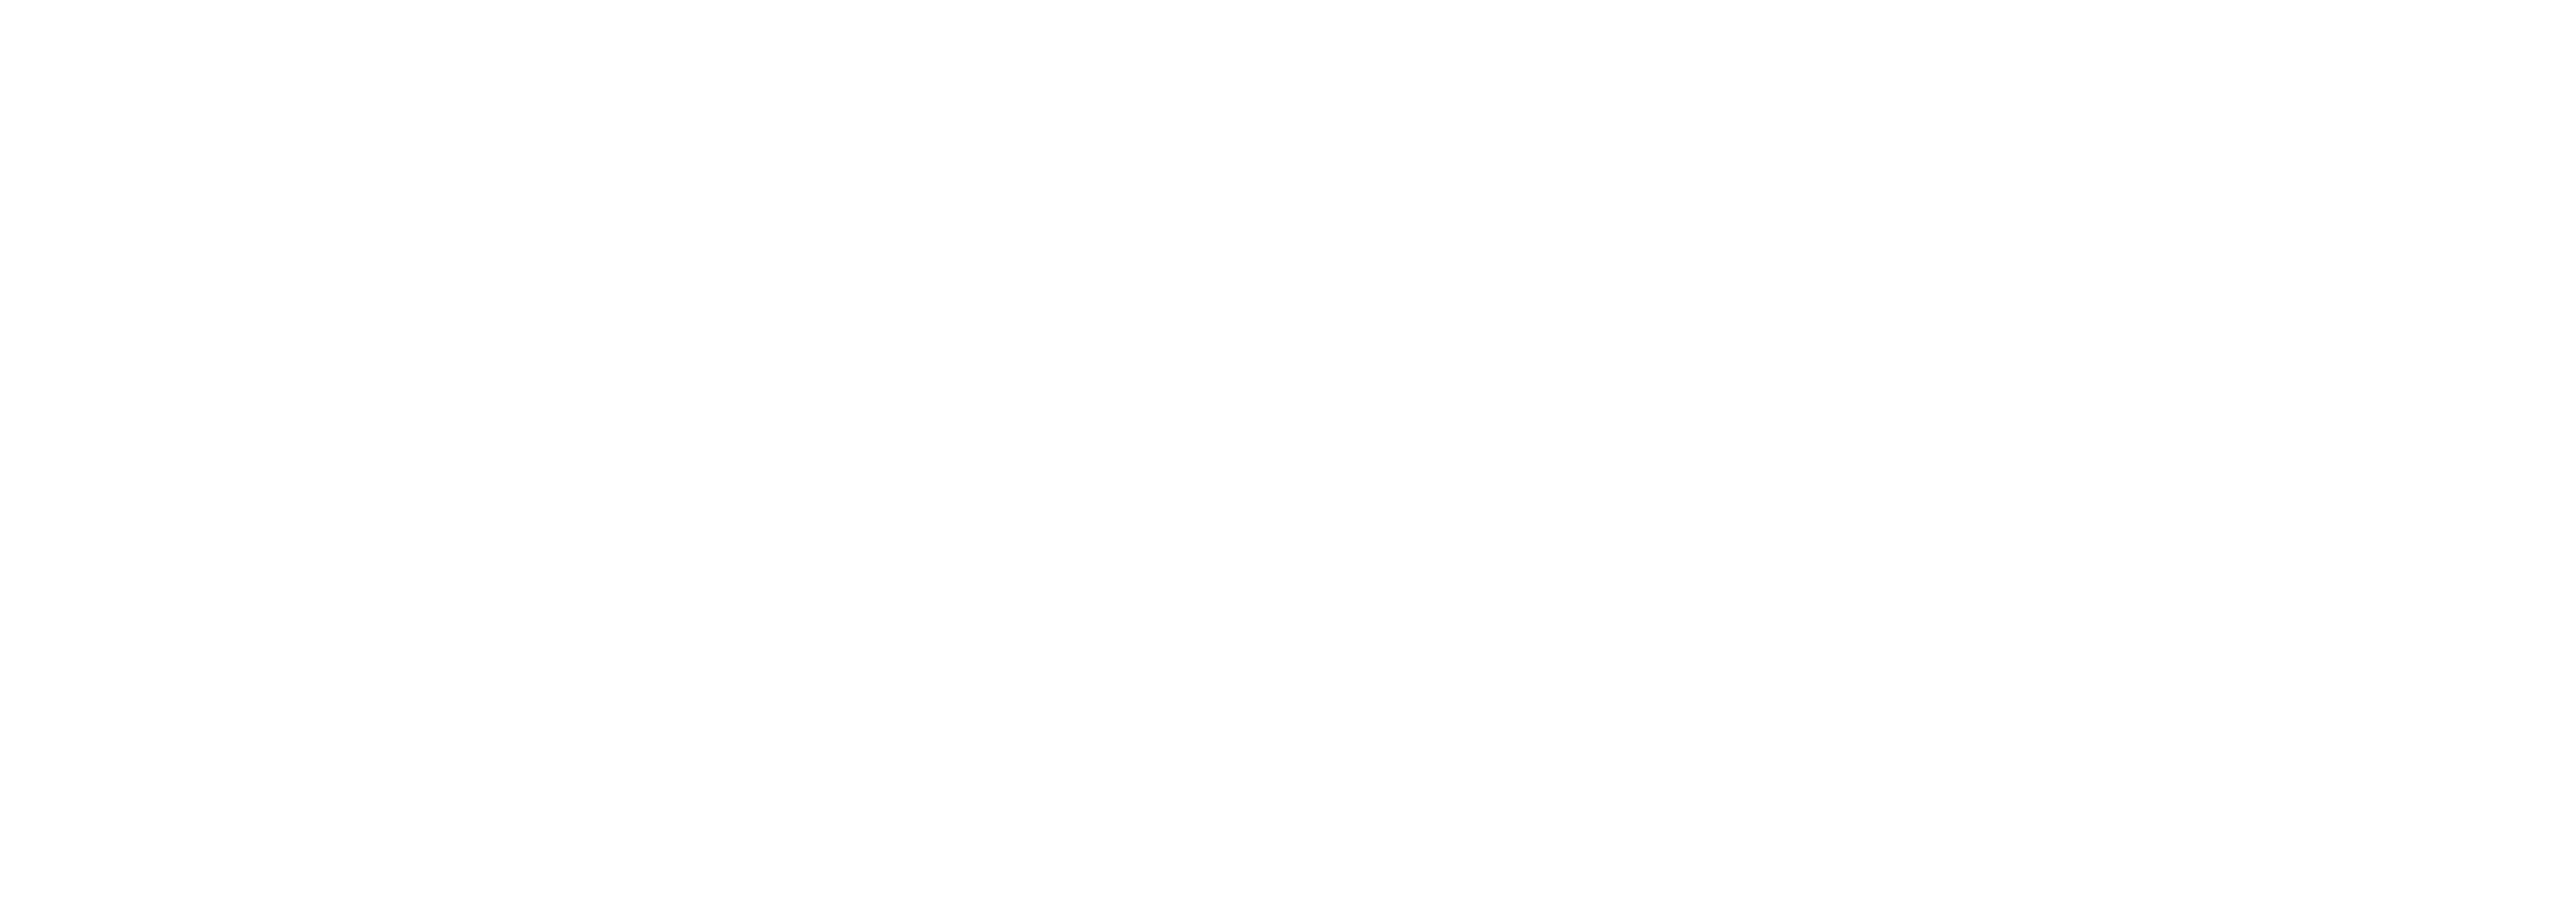 Domnican Restarant Logo - Home - Casa Del Campo Long Island - Dominican Restaurant | Casa Del ...